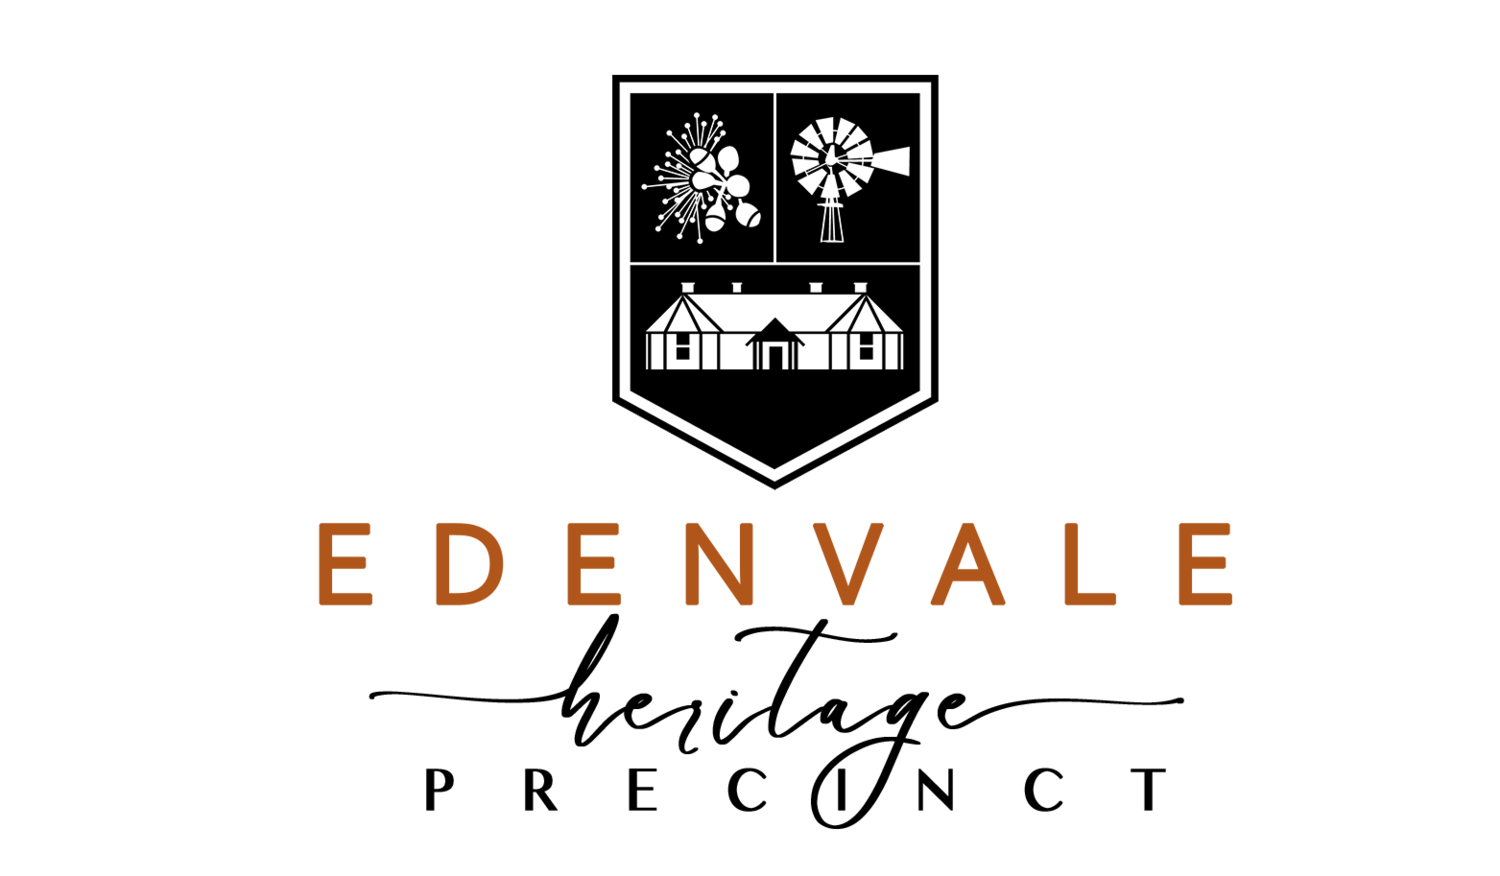 Edenvale Heritage Precinct